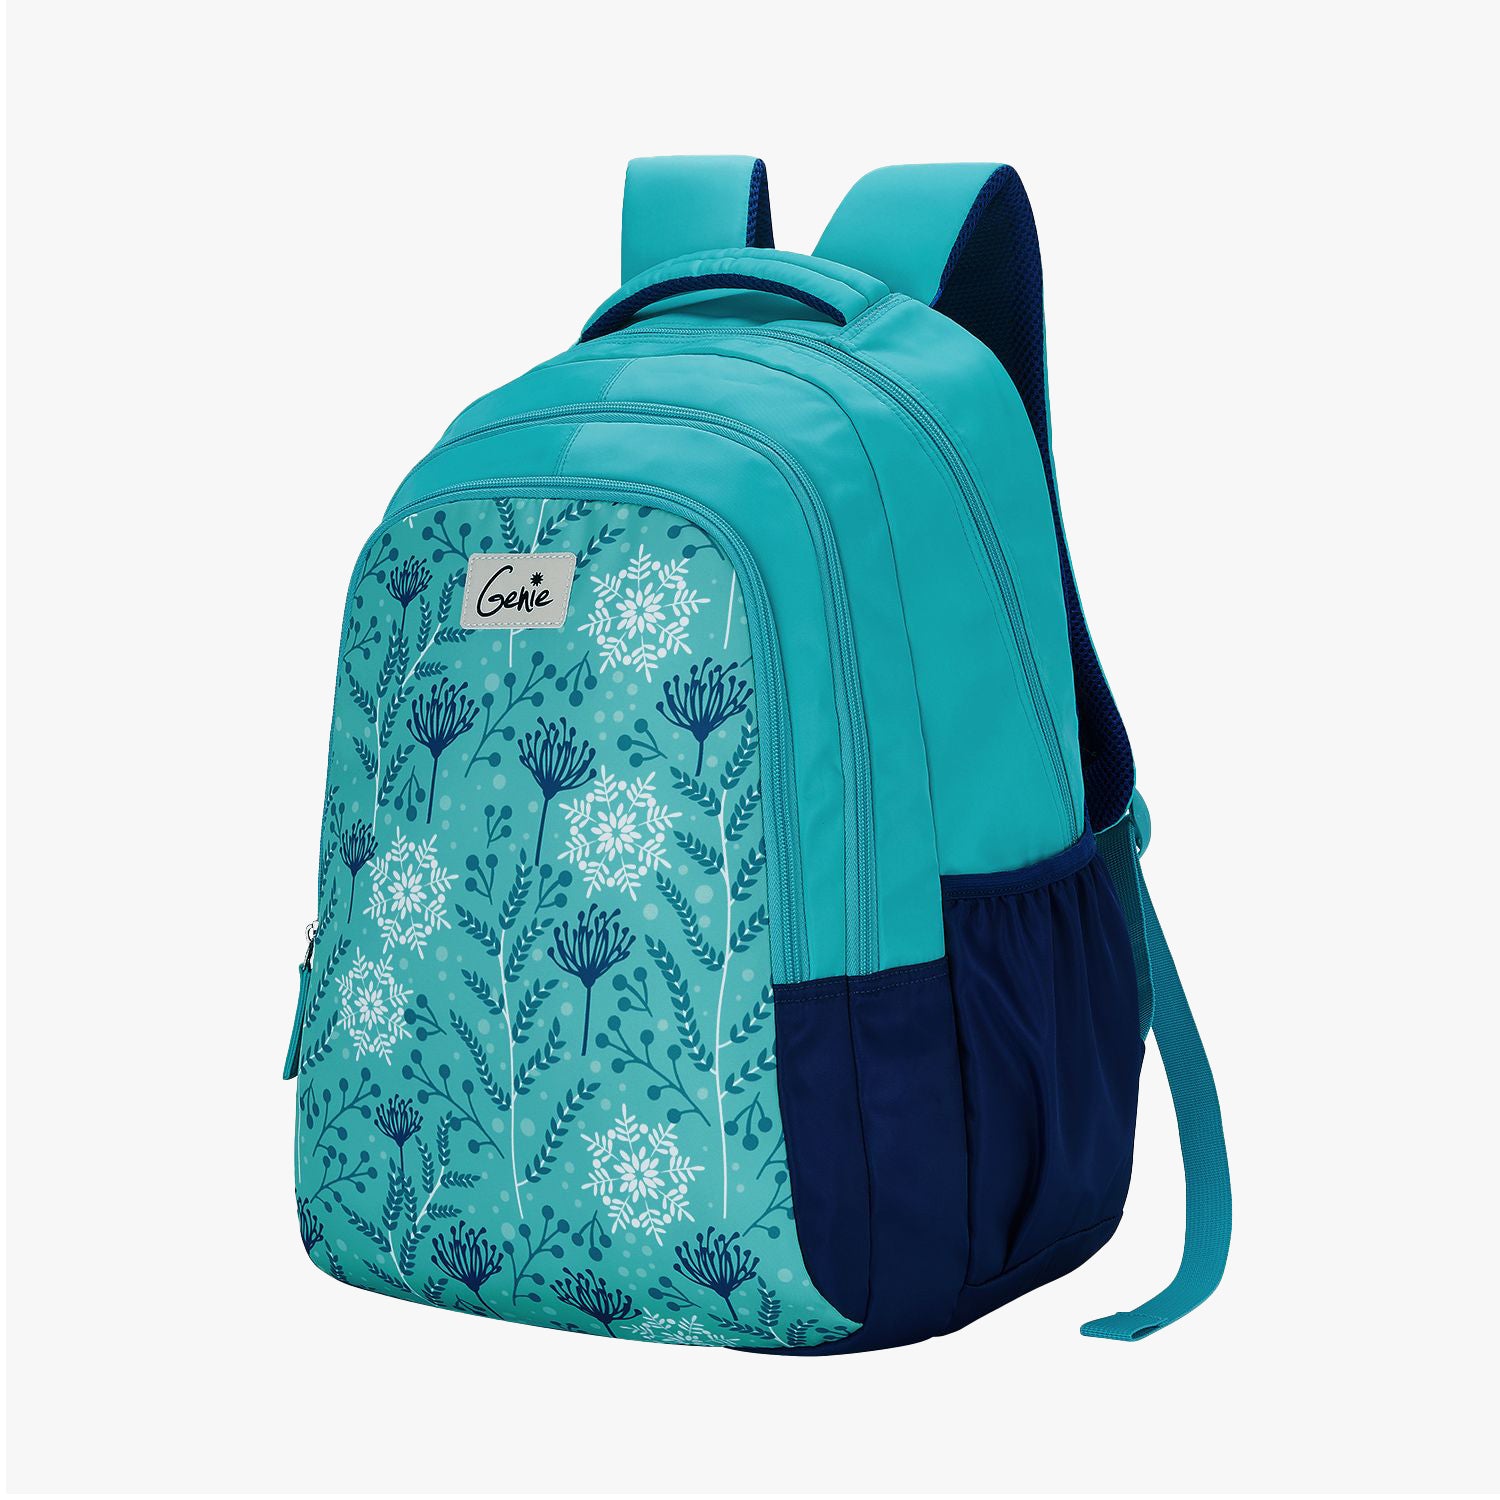 Snowflake School Backpack - Teal